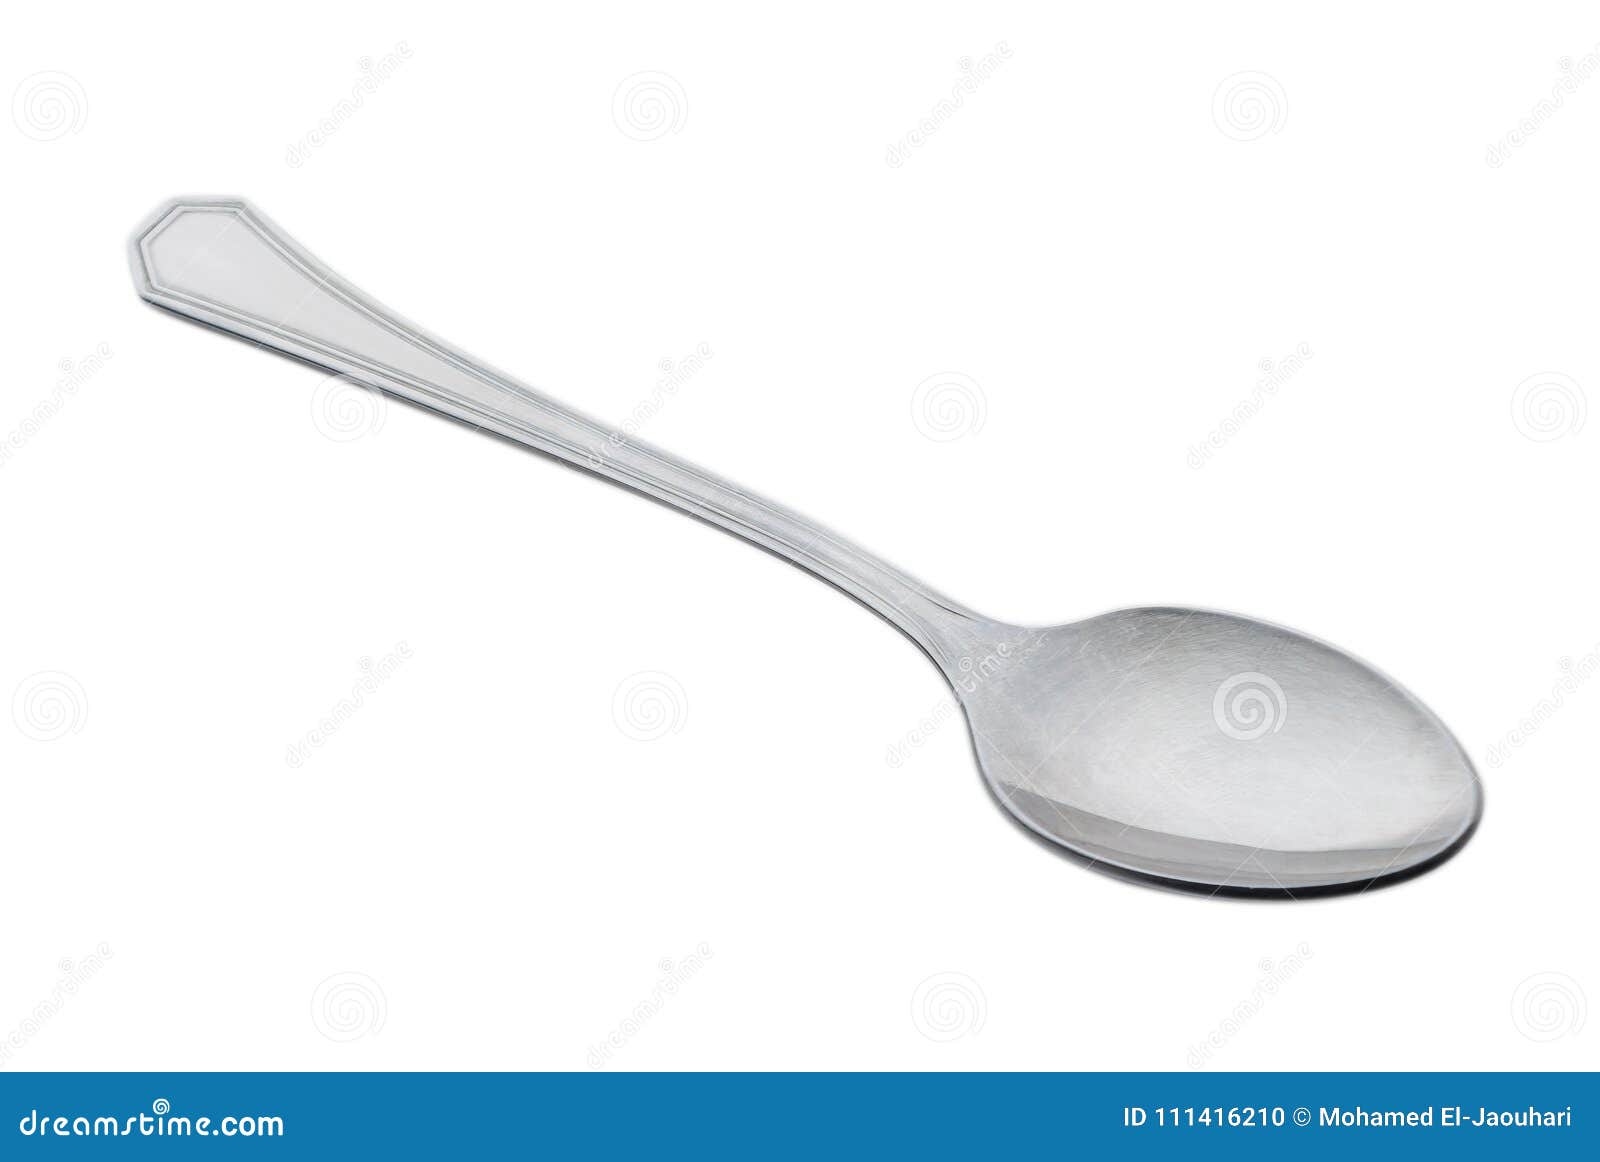 metallic spoon  on white